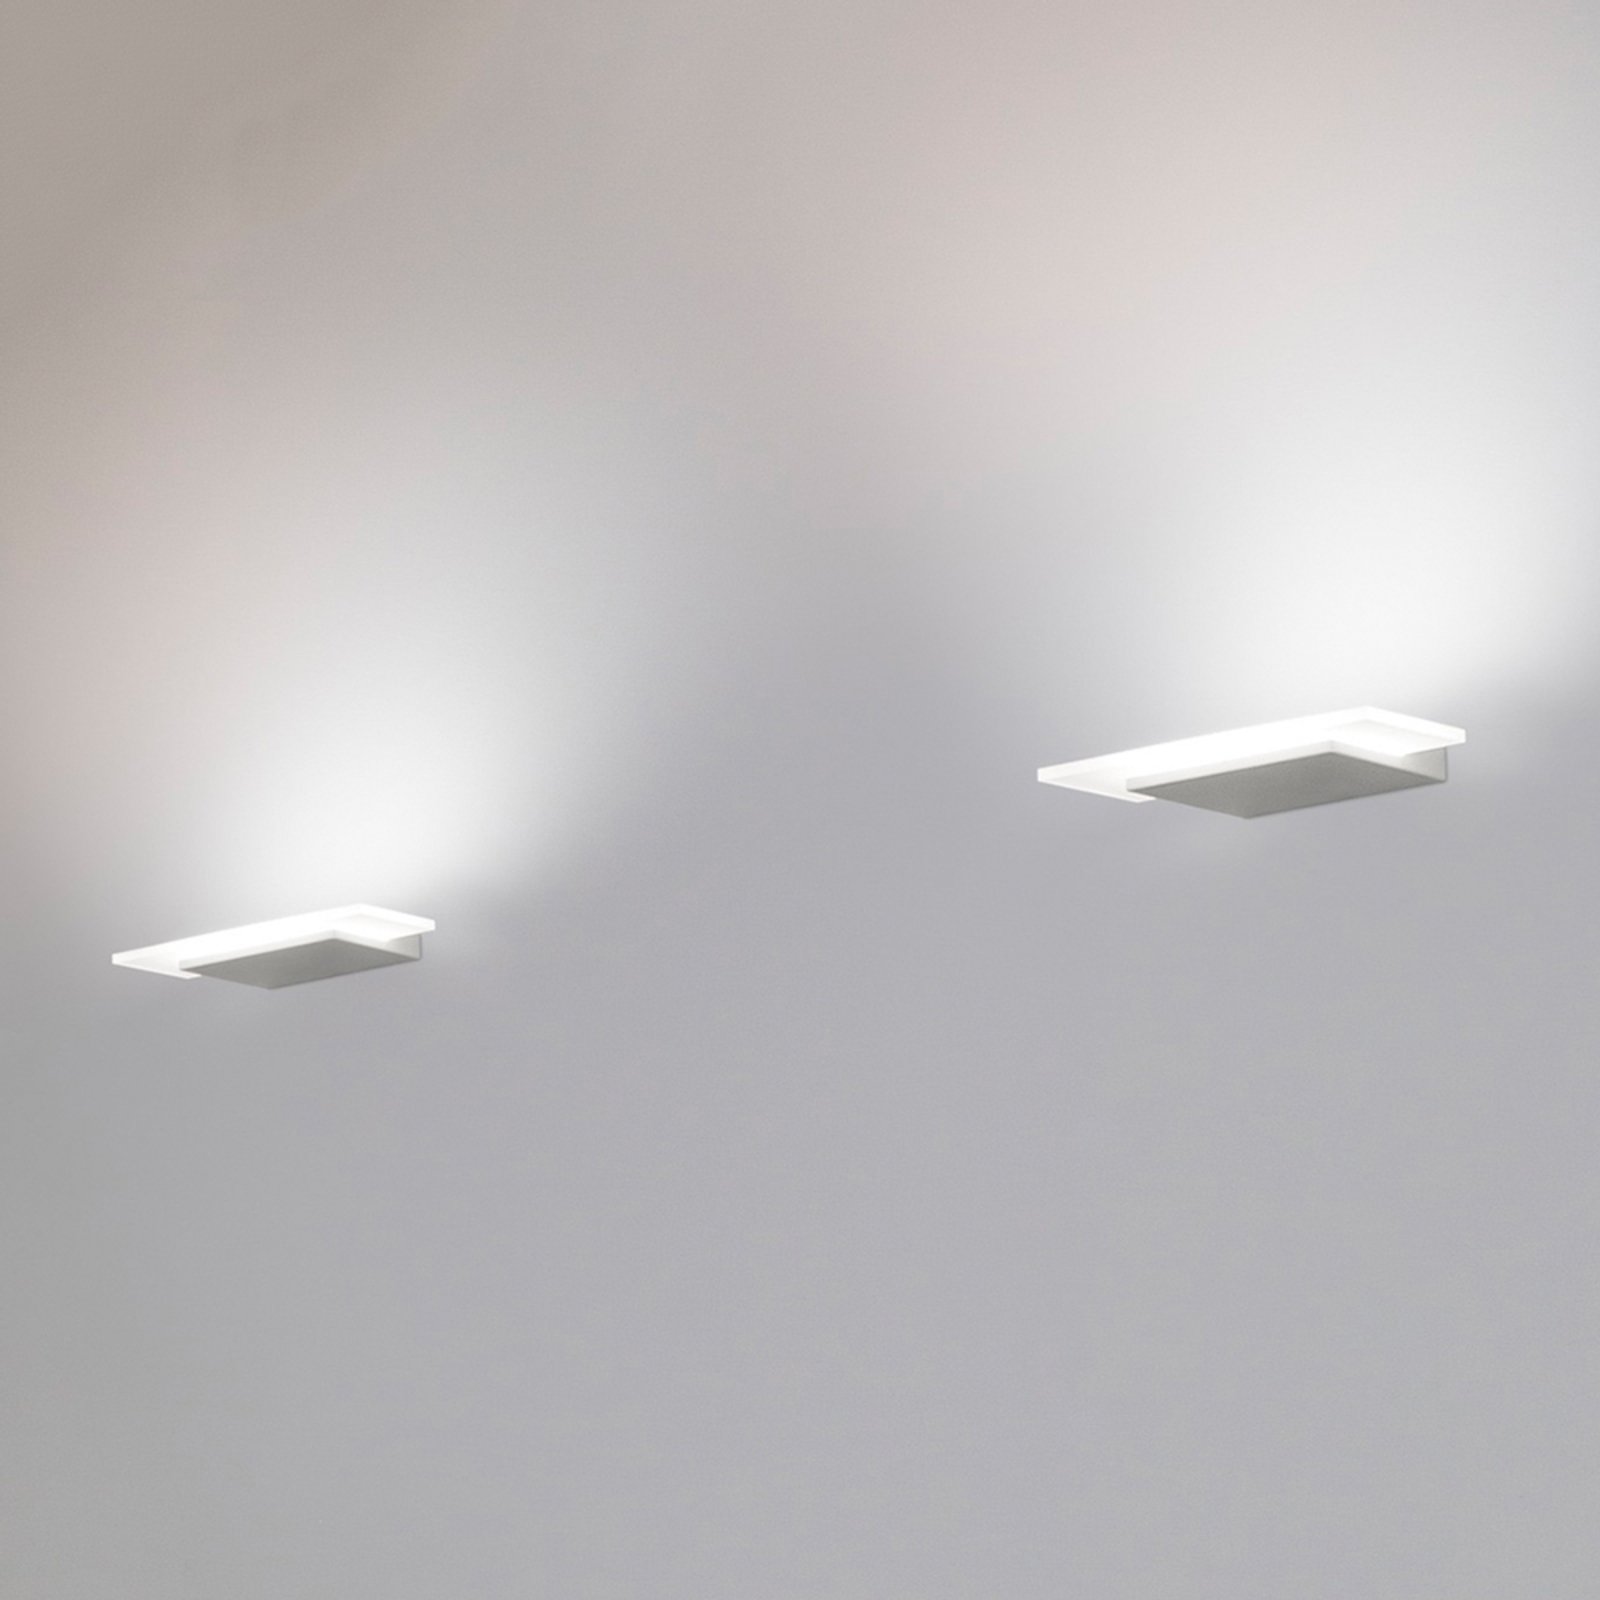 Dublight - LED nástěnné světlo, 30 cm